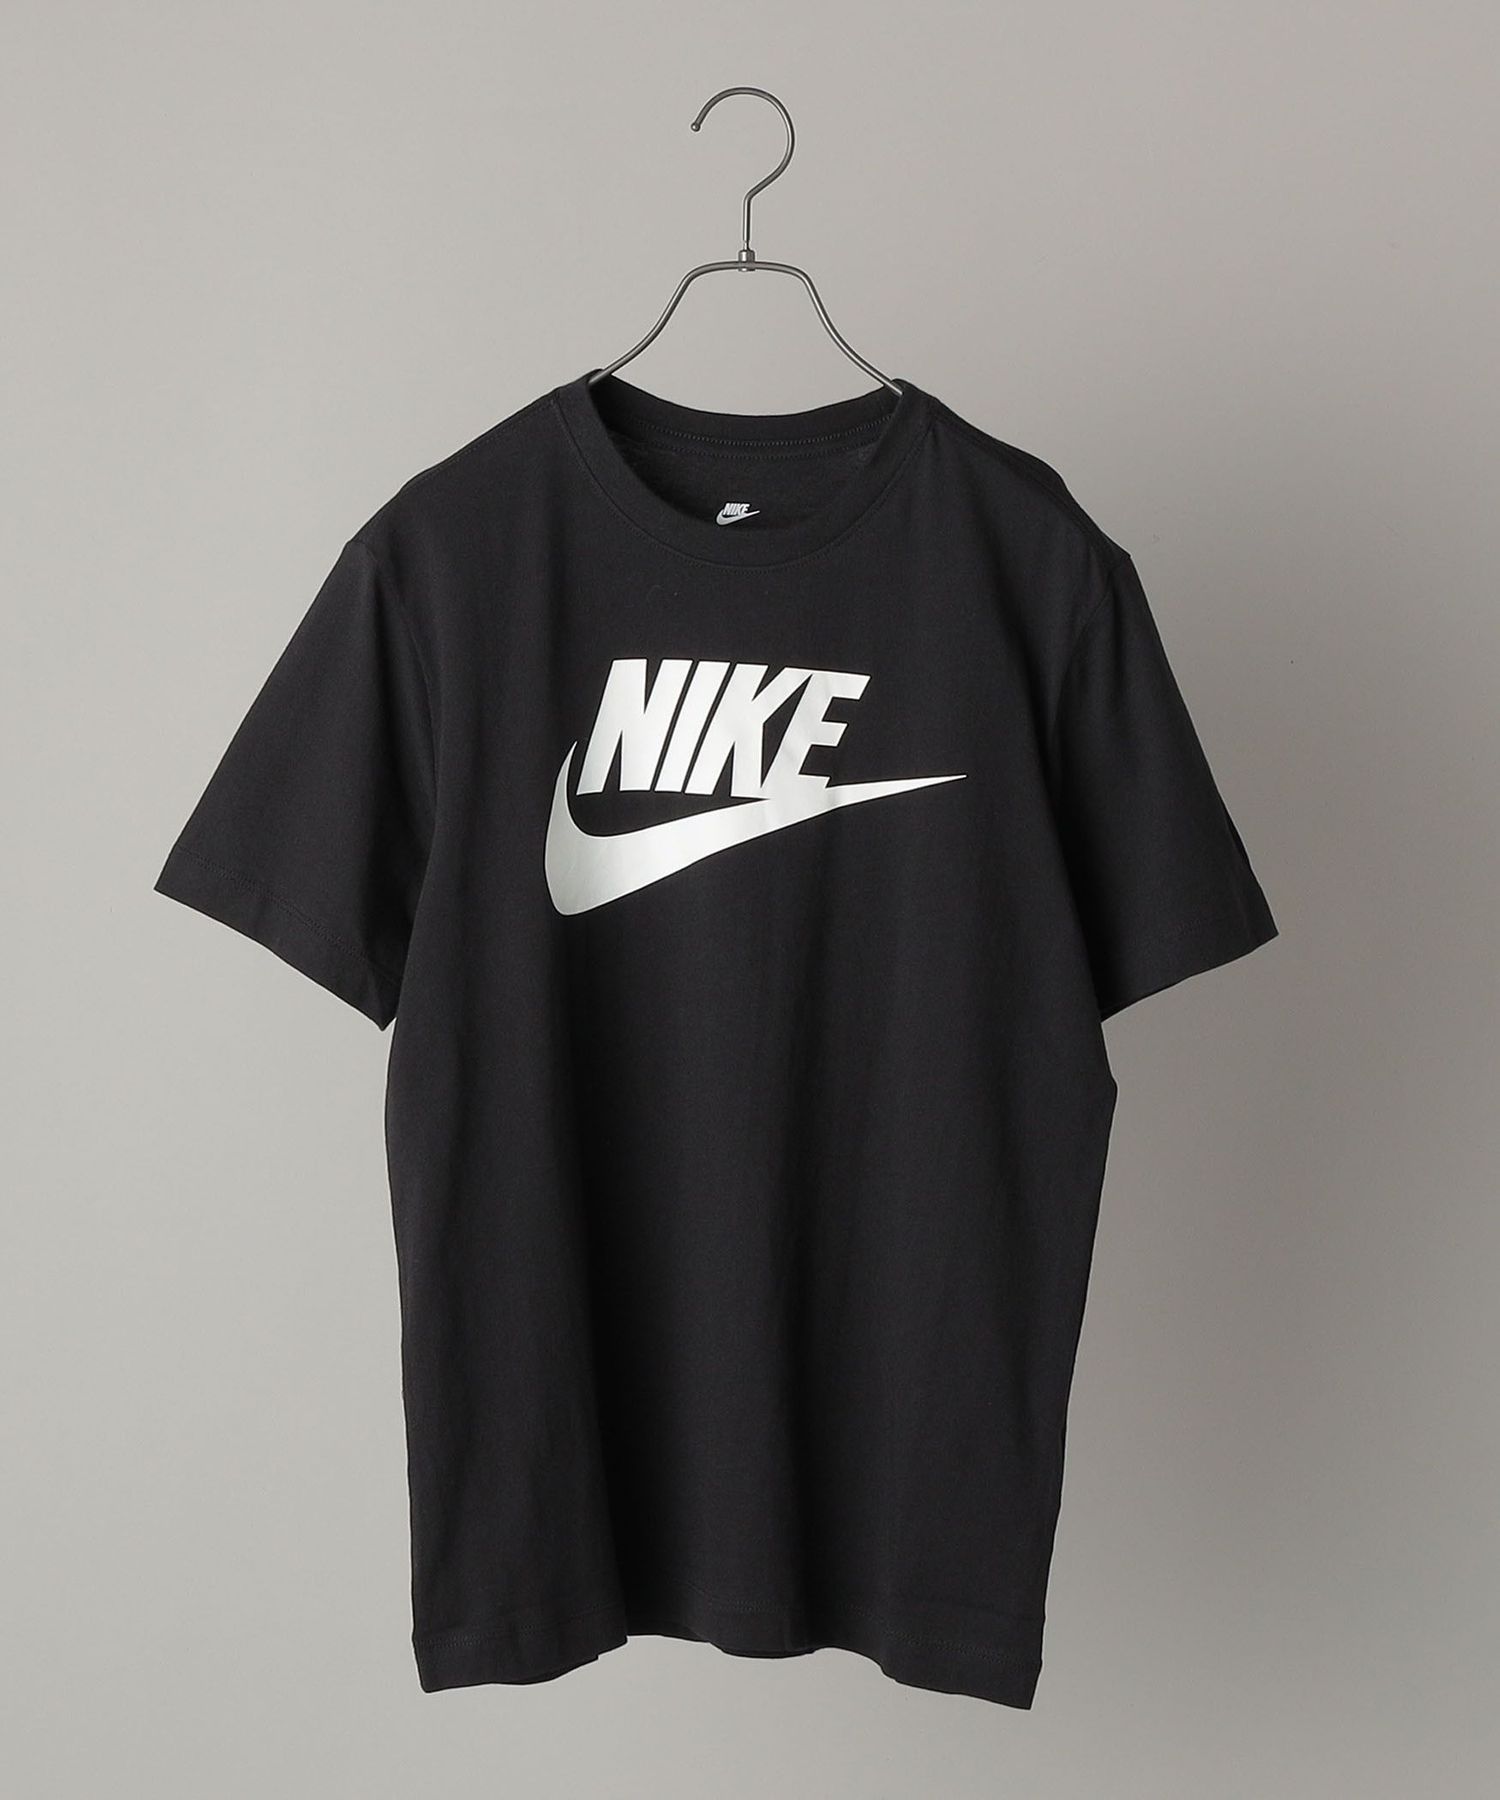 NIKE 素晴らしい品質 NIKE: フューチュラ 人気商品は S アイコン Tシャツ